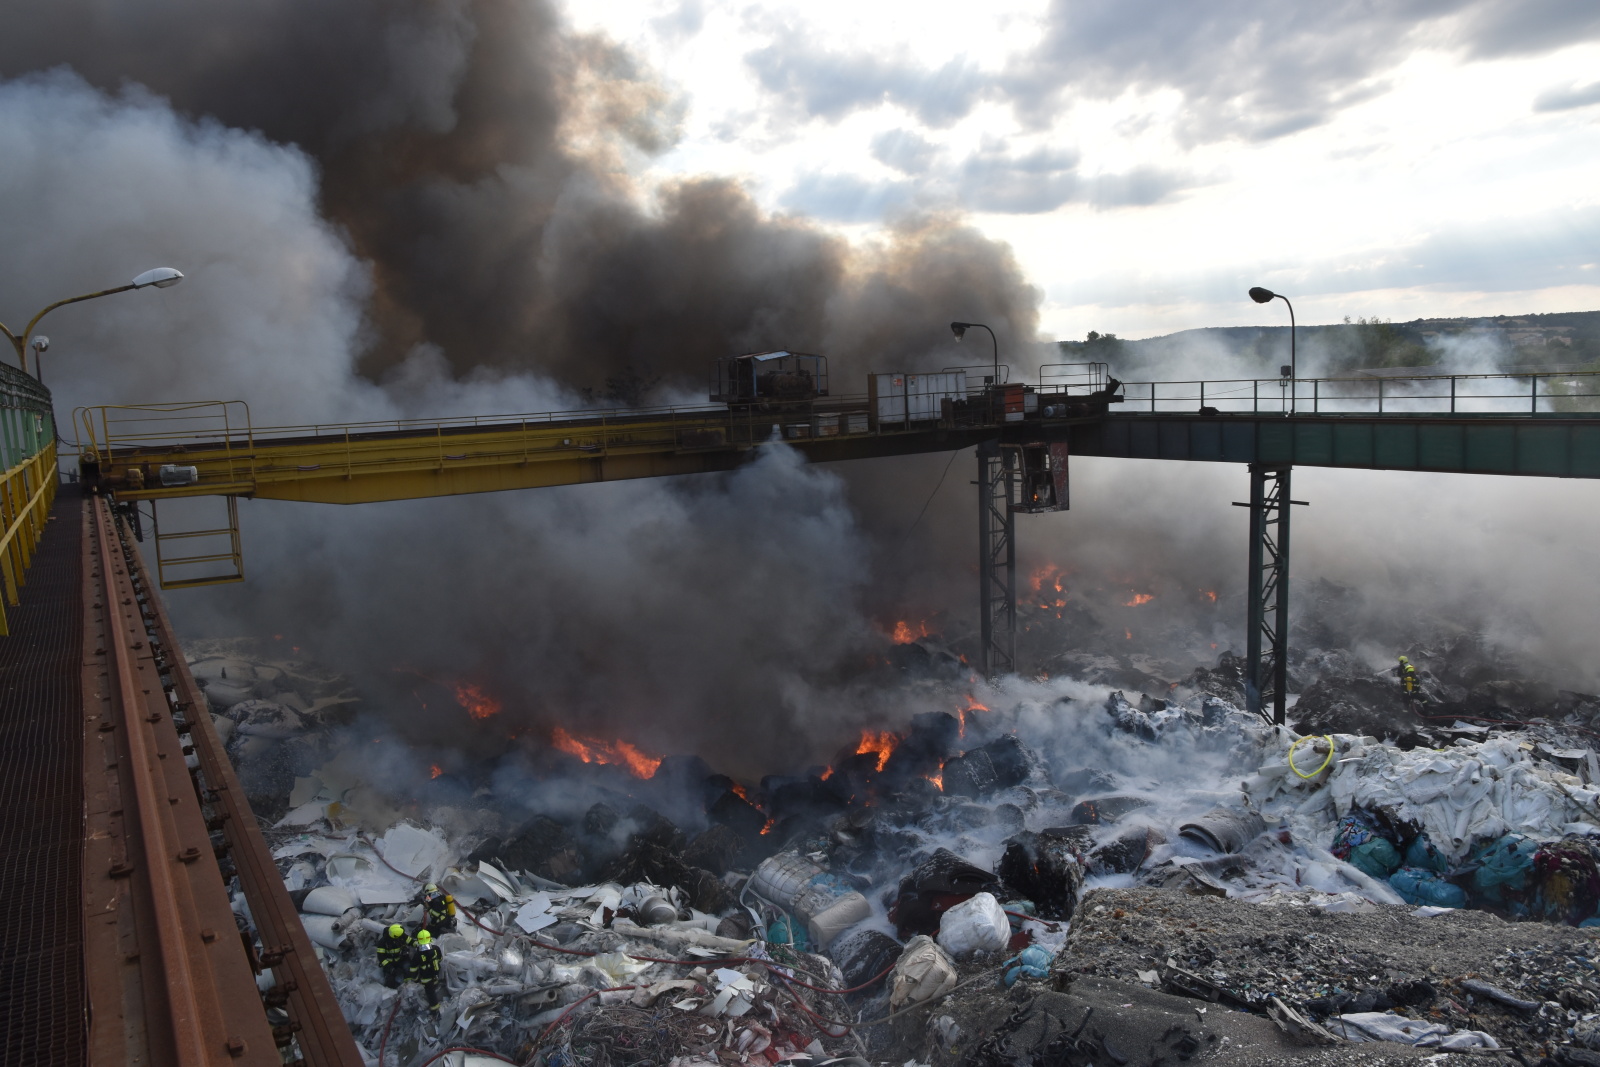 056-Rozsáhlý požár skládky odpadu v kovošrotu v Kralupech nad Vltavou.JPG